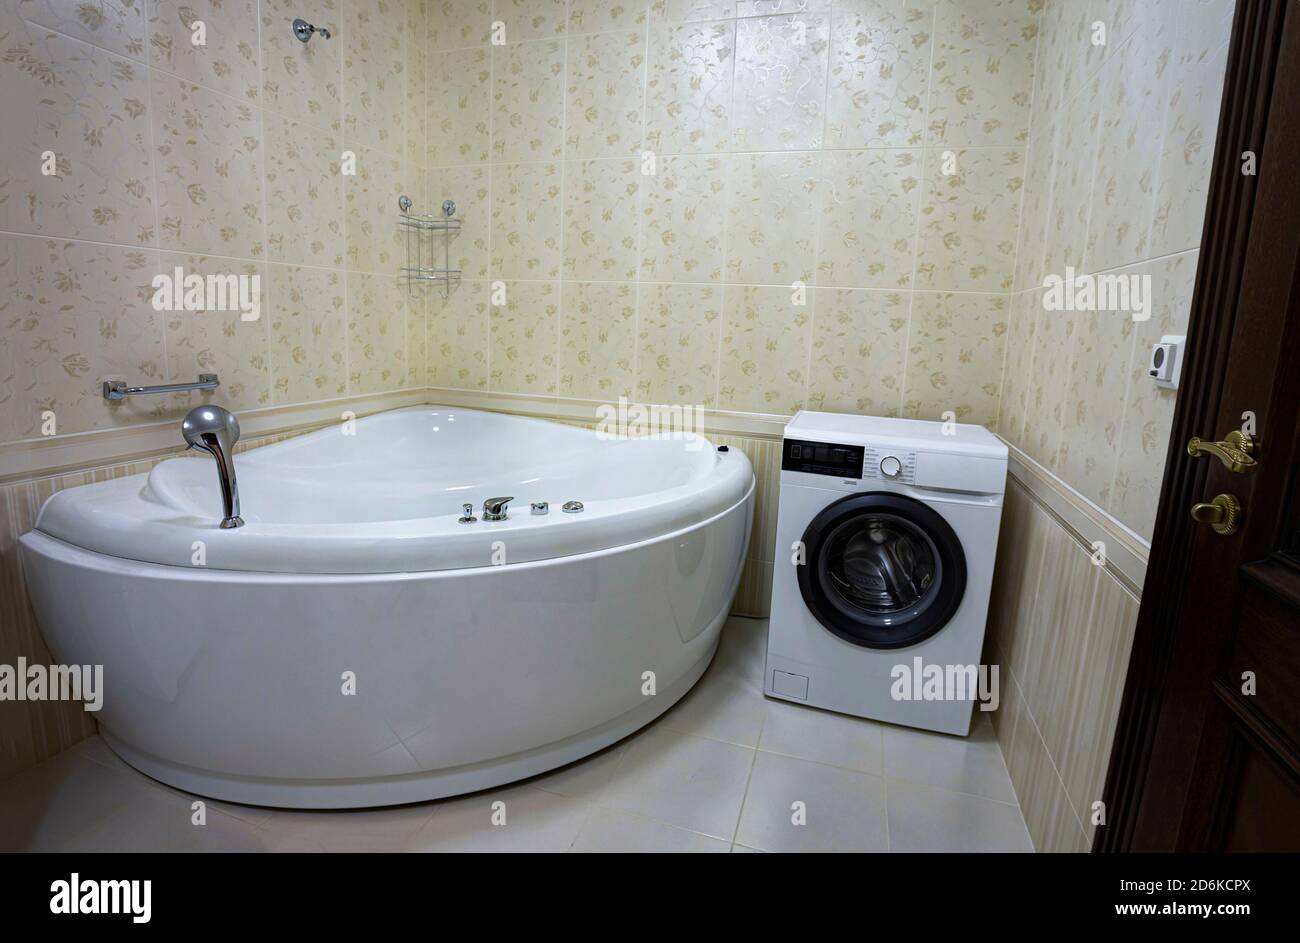 Modern bathroom with jacuzzi bath, copy space Stock Photo - Alamy